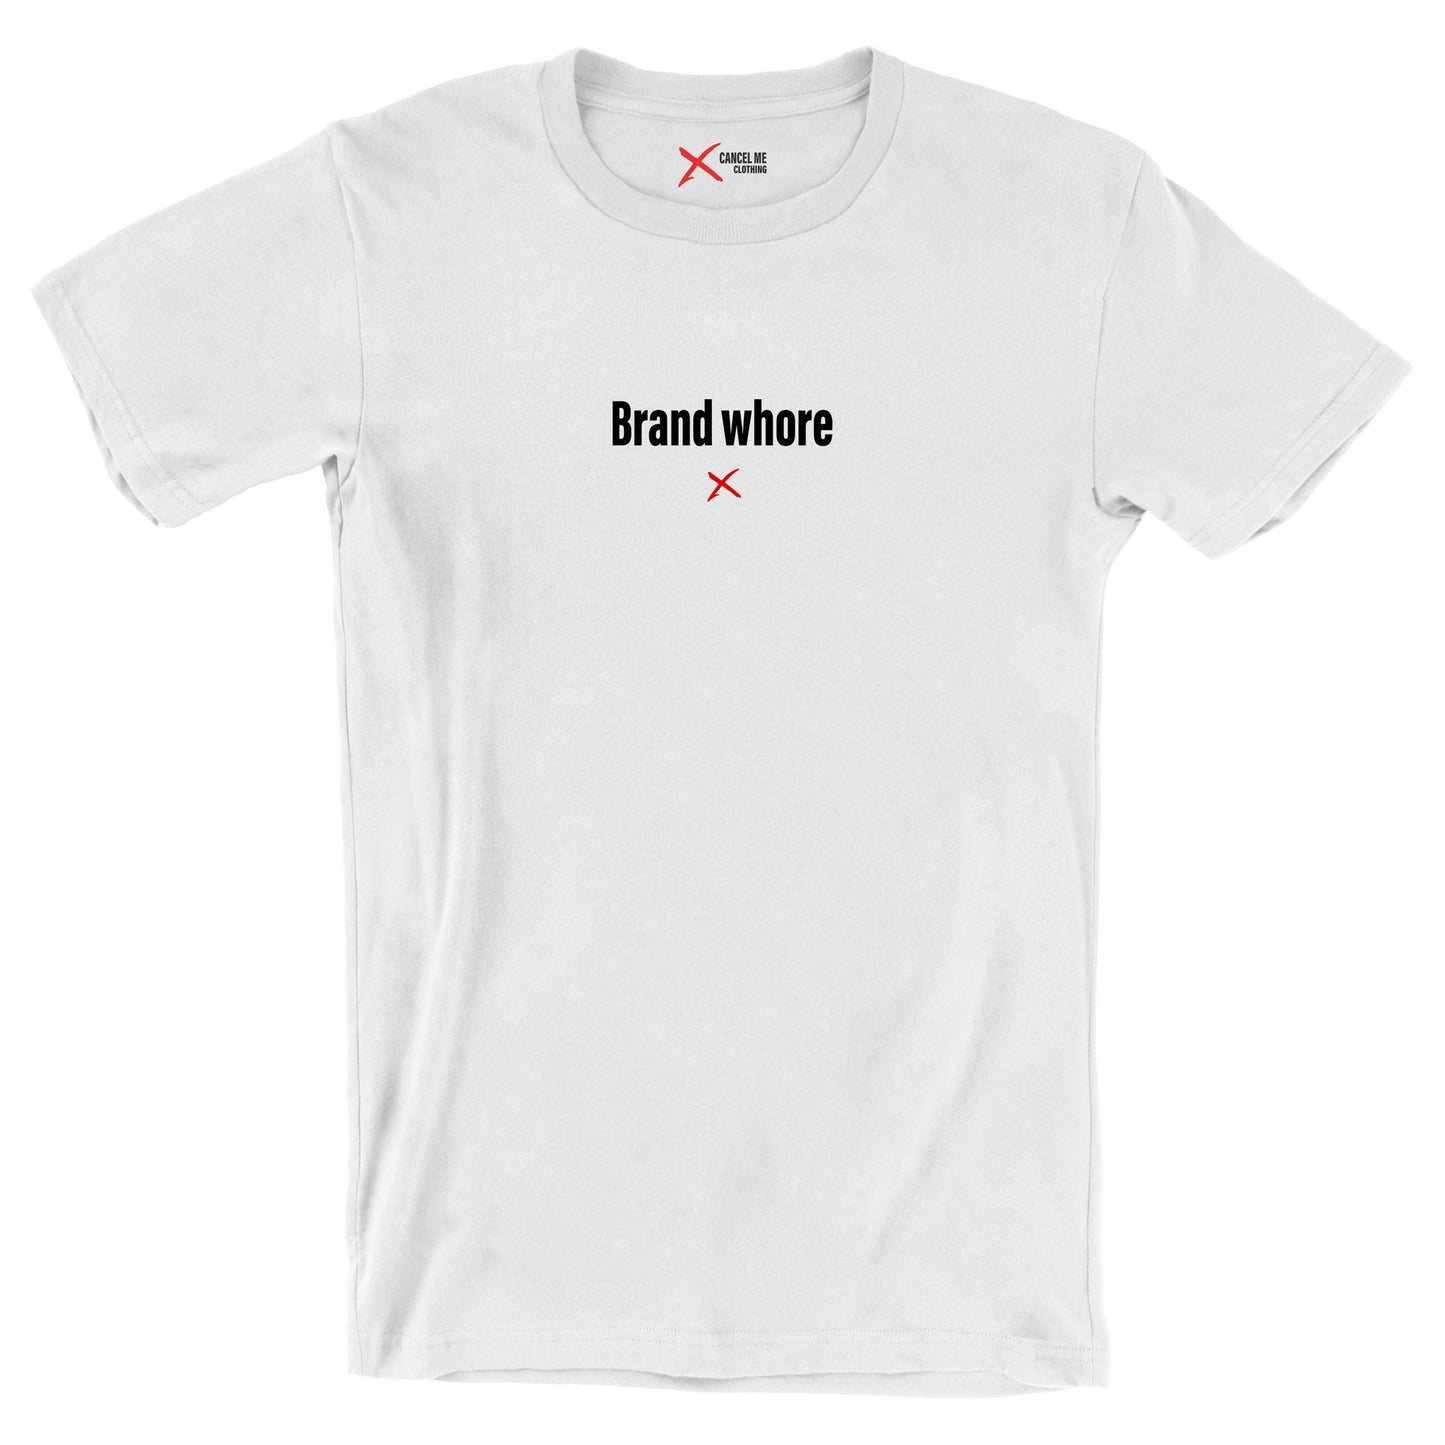 Brand whore - Shirt